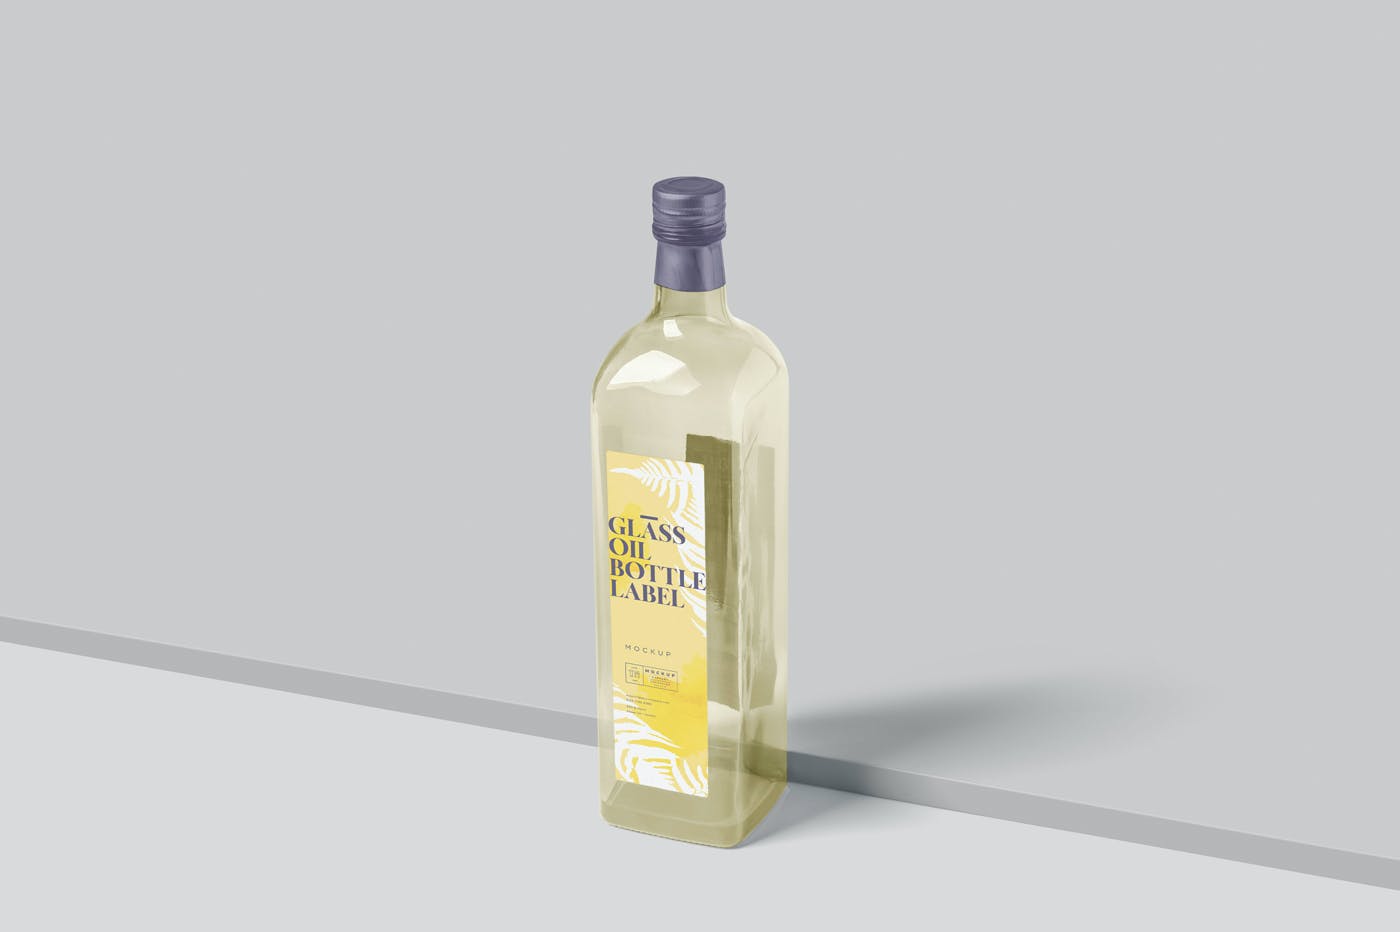 长方形玻璃油瓶包装设计展示样机（PSD）